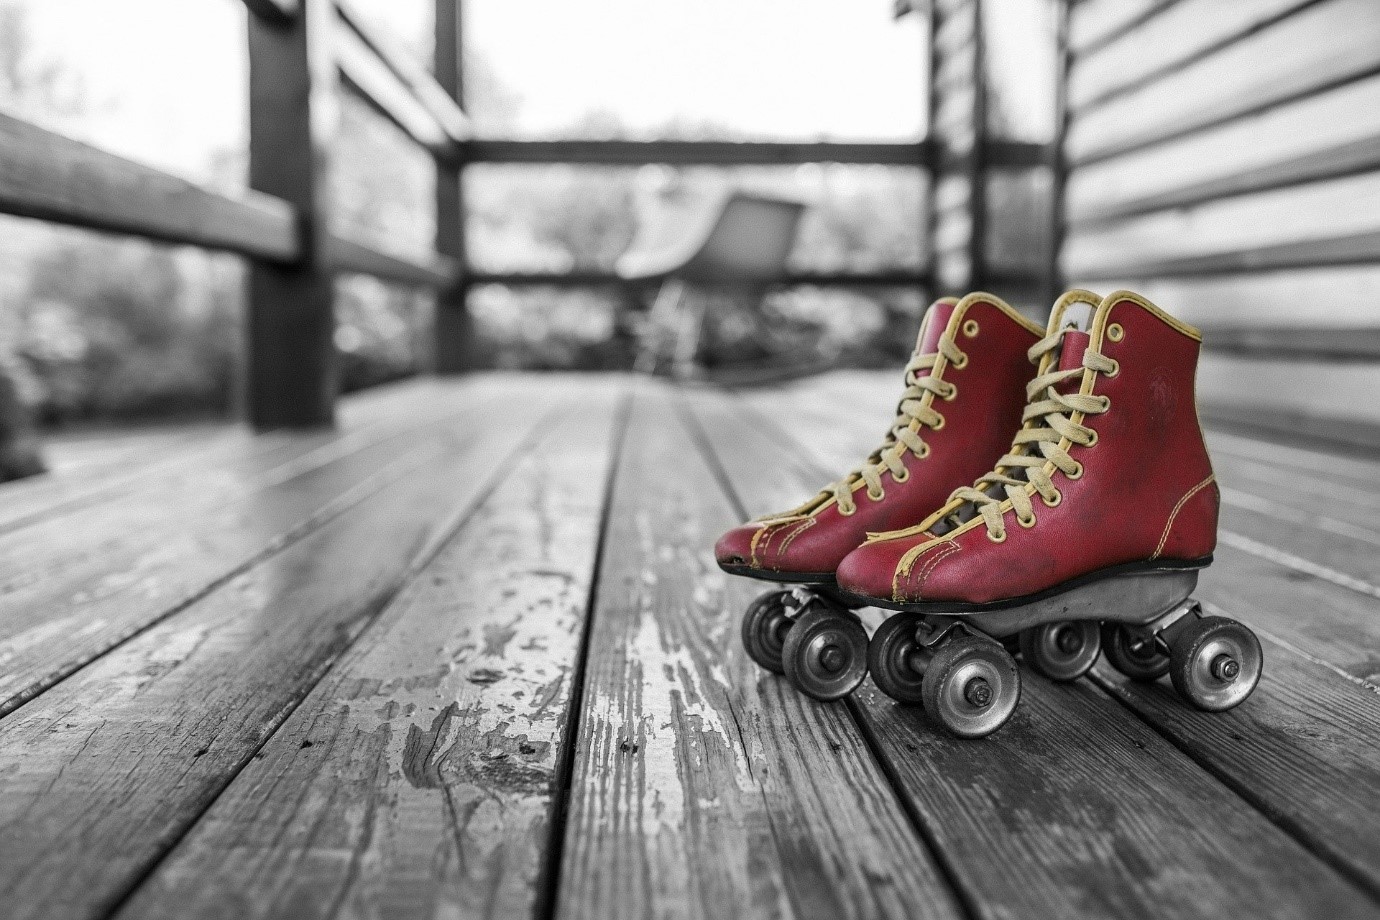 historia del patinaje artístico sobre ruedas y sus comienzos